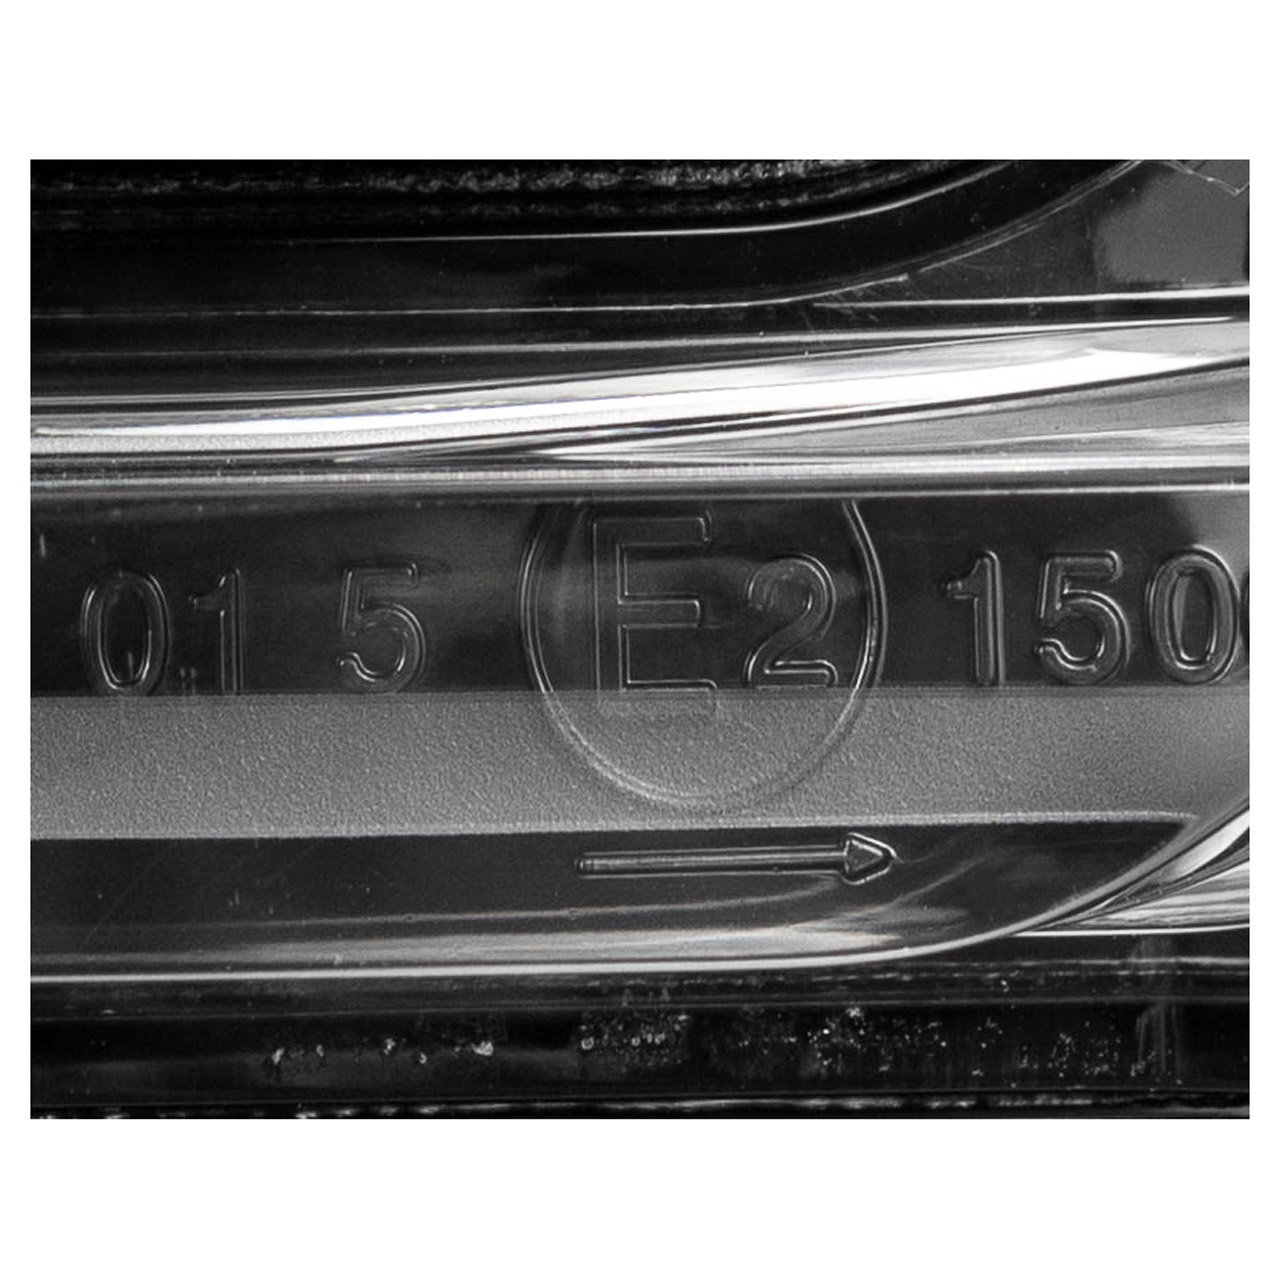 ORIGINAL PSA Opel Blinker Außenspiegel C5 Aircross Grandland X 3008 5008 rechts 1618048780